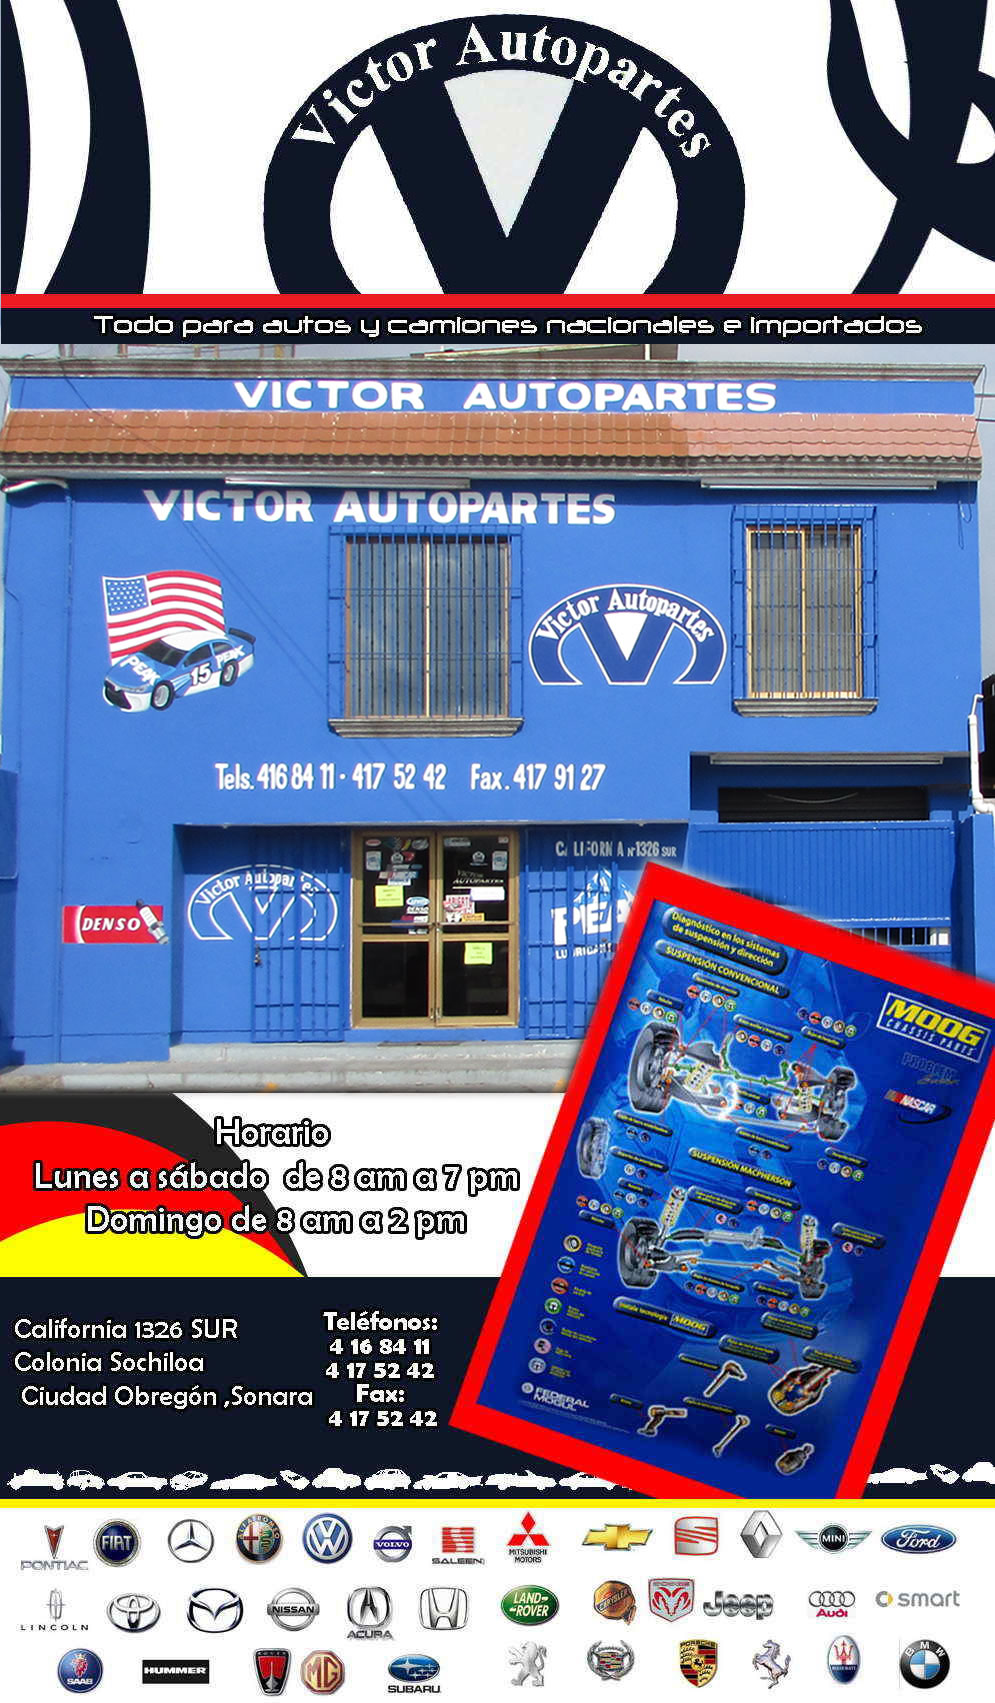 VICTOR AUTOPARTES-Todo para autos y camiones Nacionales e Importados.        